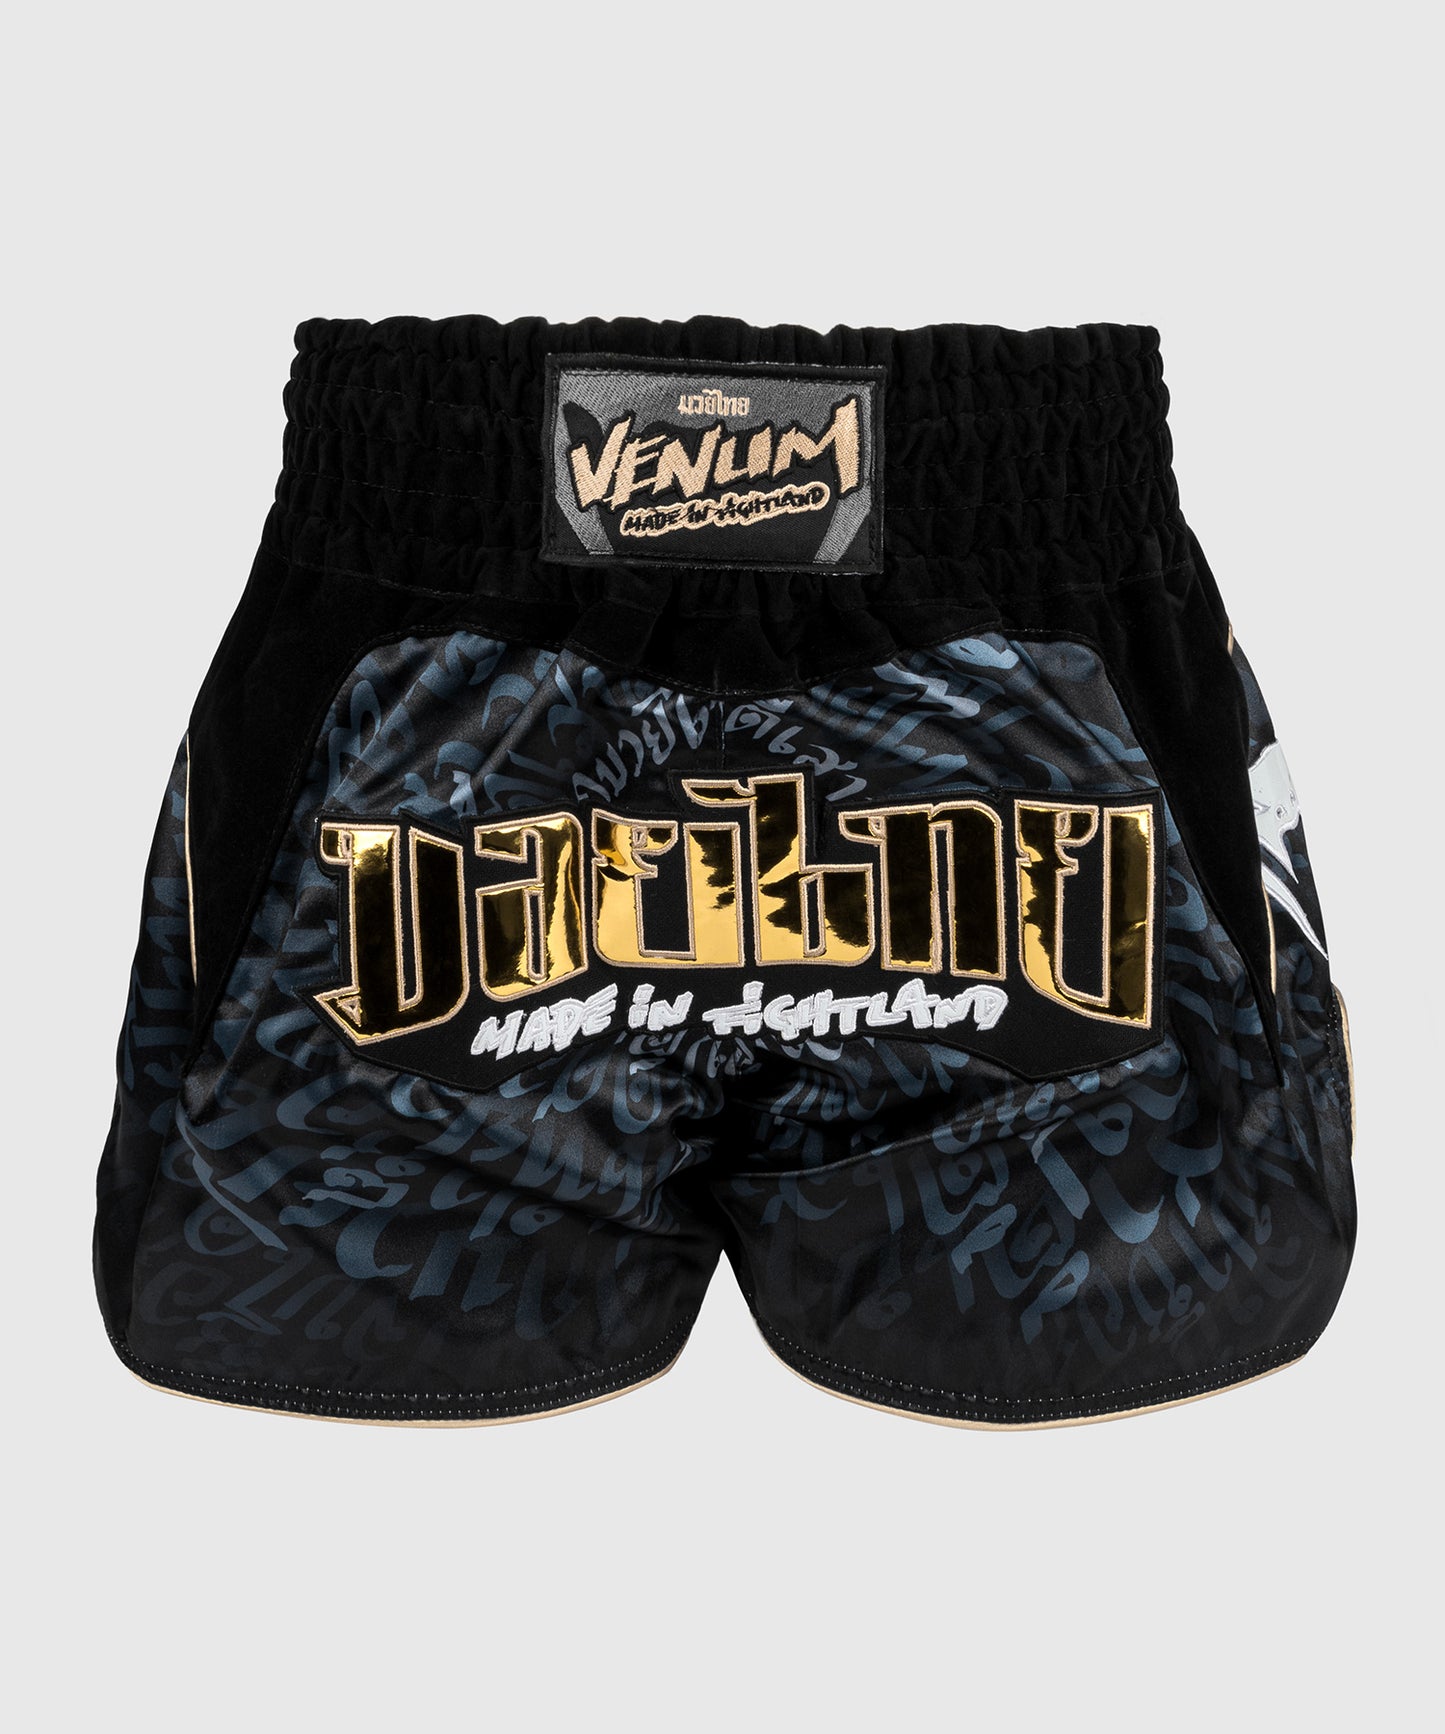 Venum Attack Shorts de Muay Thai - Negro/Gris